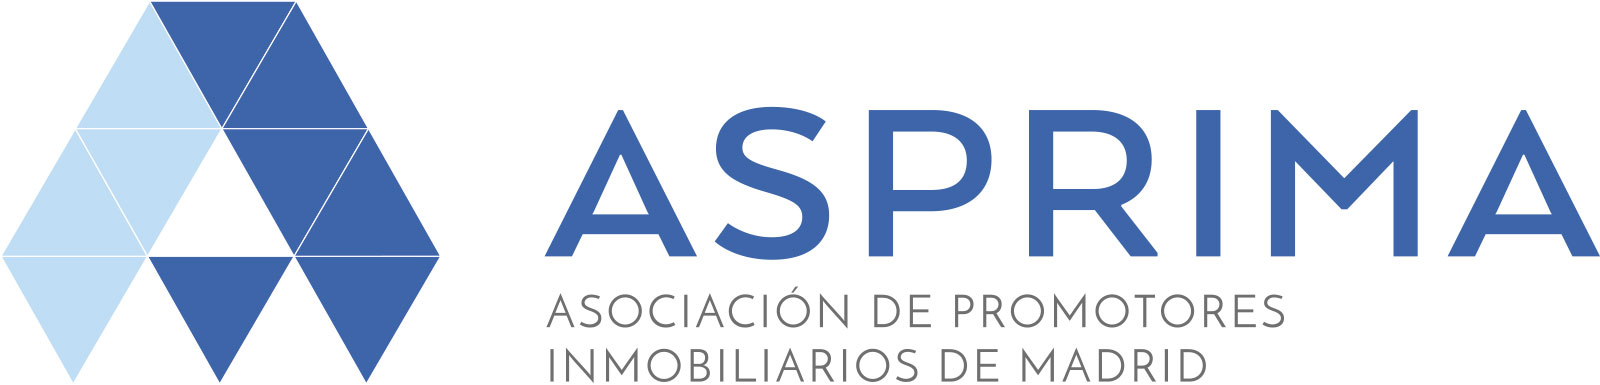 ASPRIMA-Asociación de Promotores Inmobiliarios de Madrid